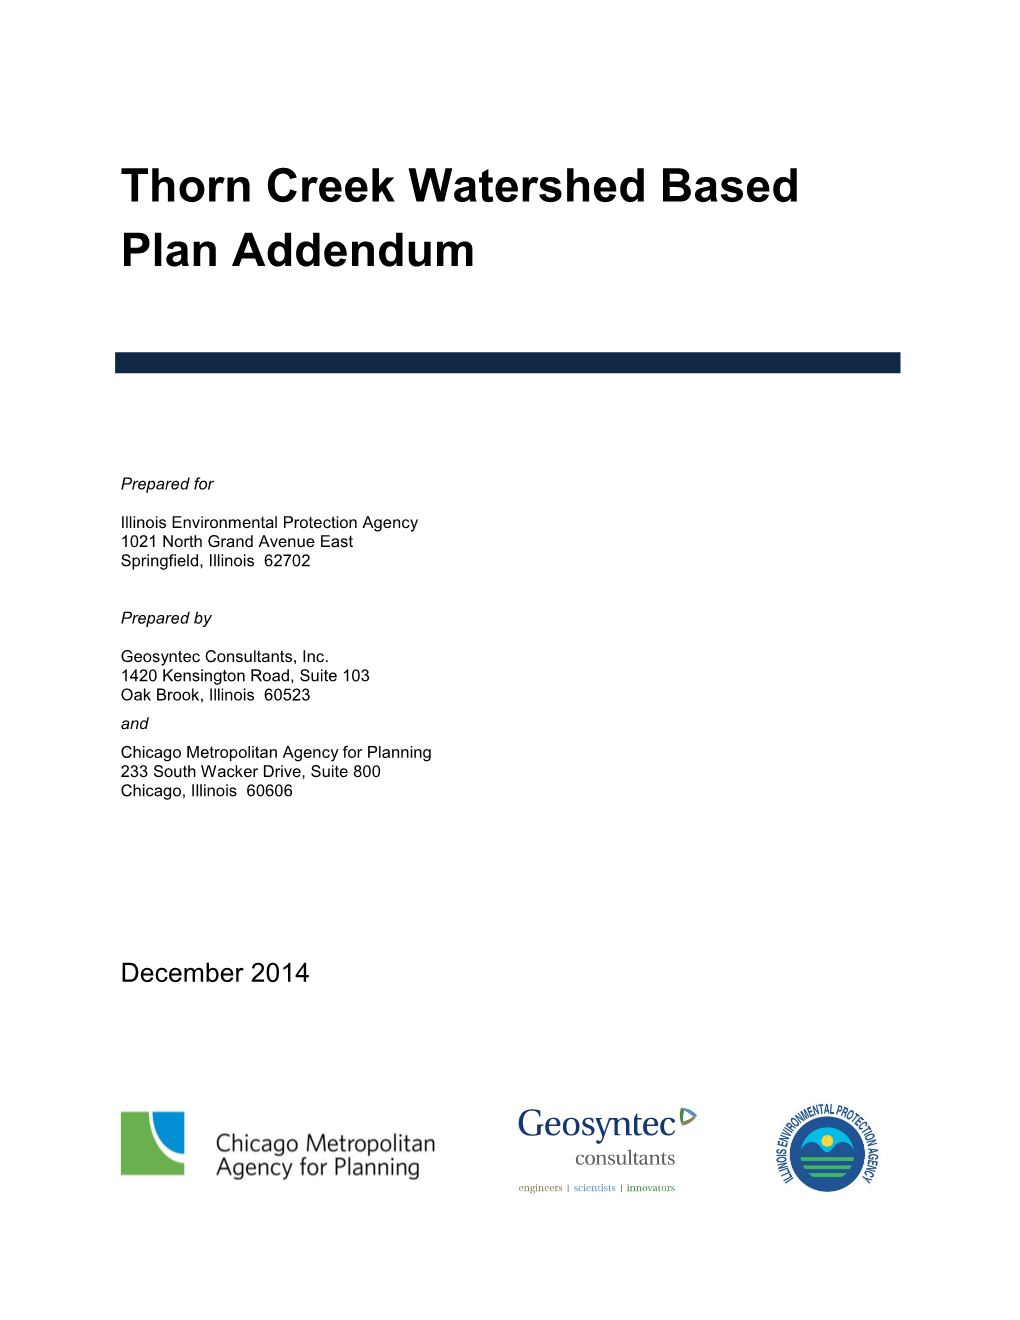 Thorn Creek Watershed Based Plan Addendum